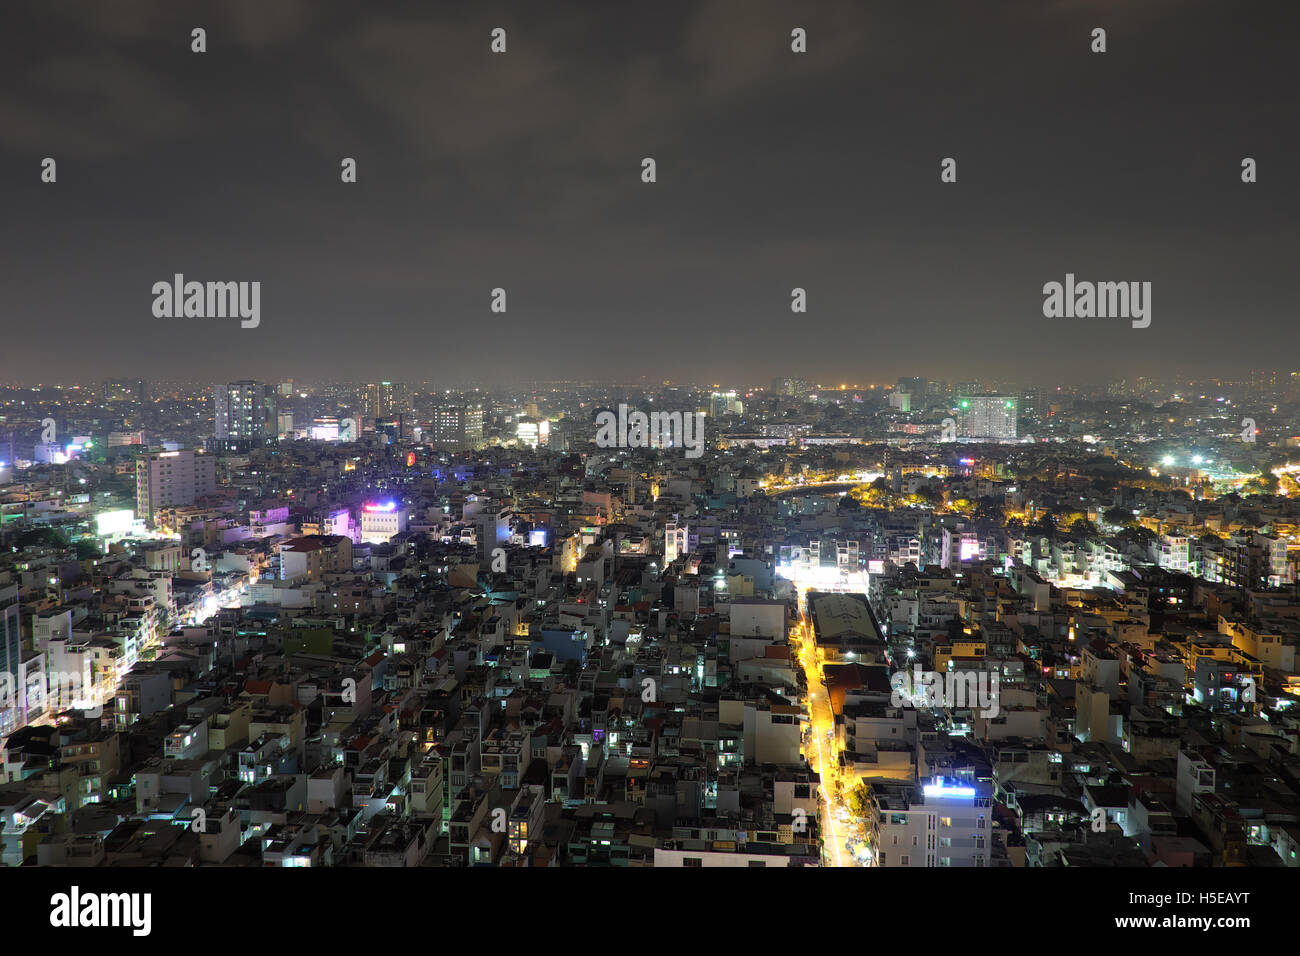 Ho Chi Minh city at night Stock Photo